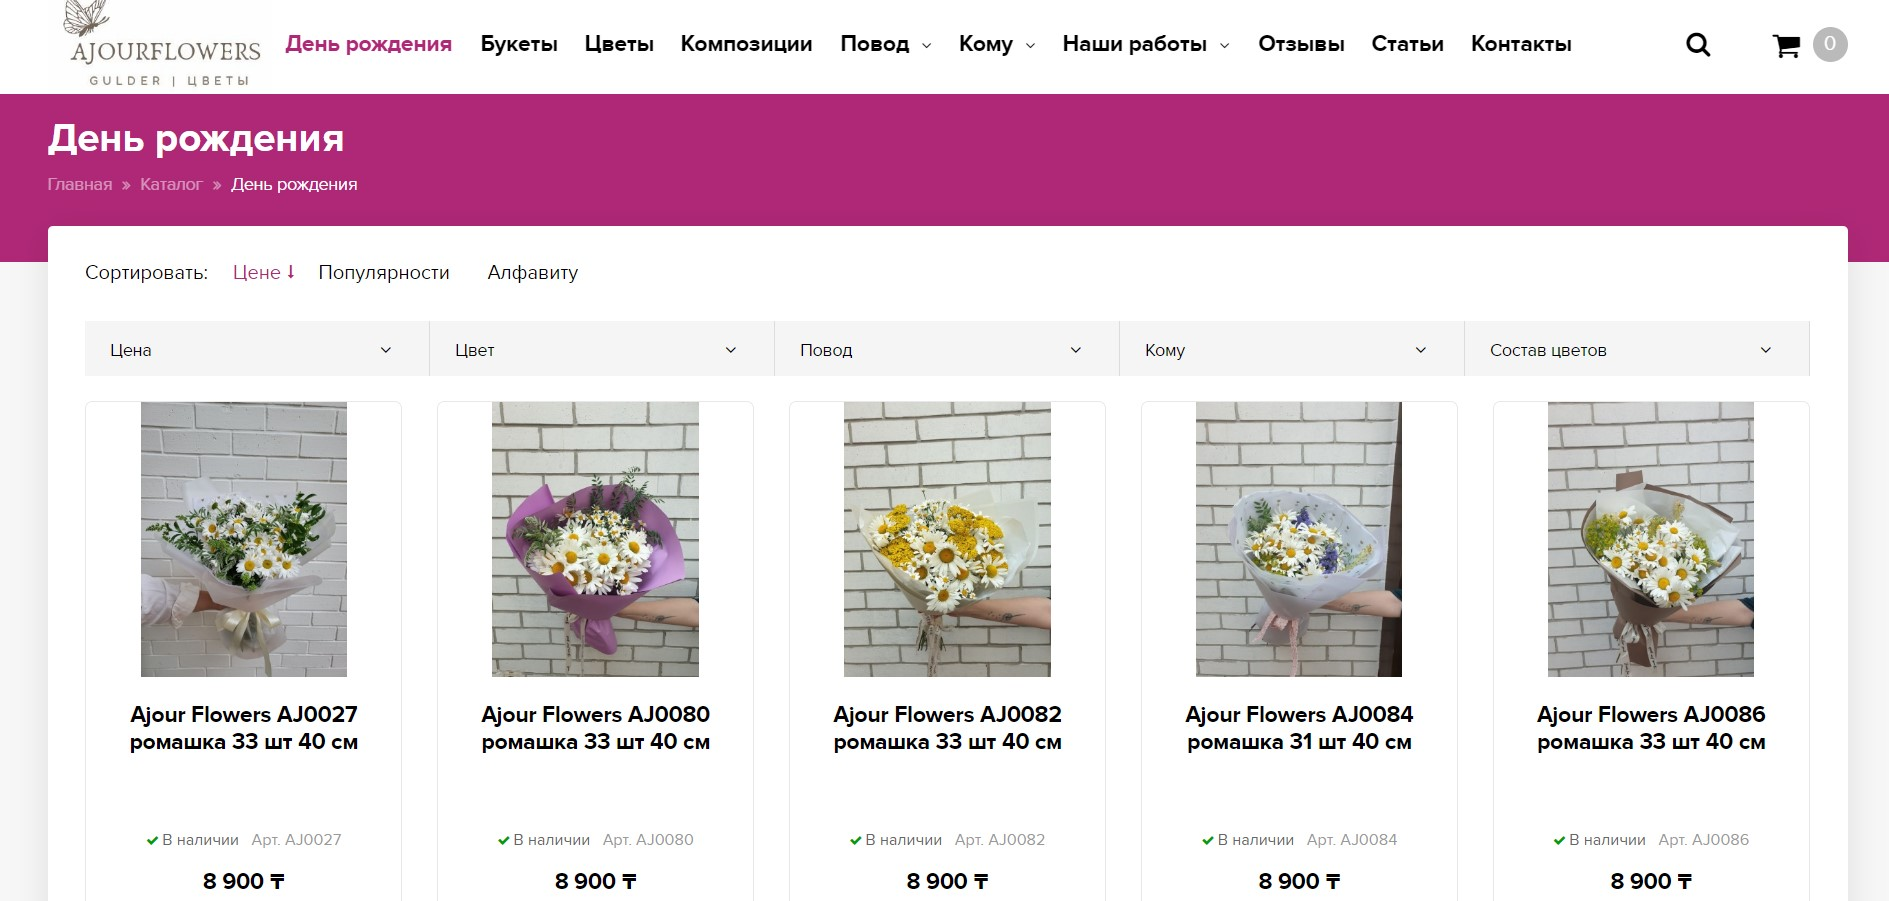 Разработка и создание сайта для доставки цветов